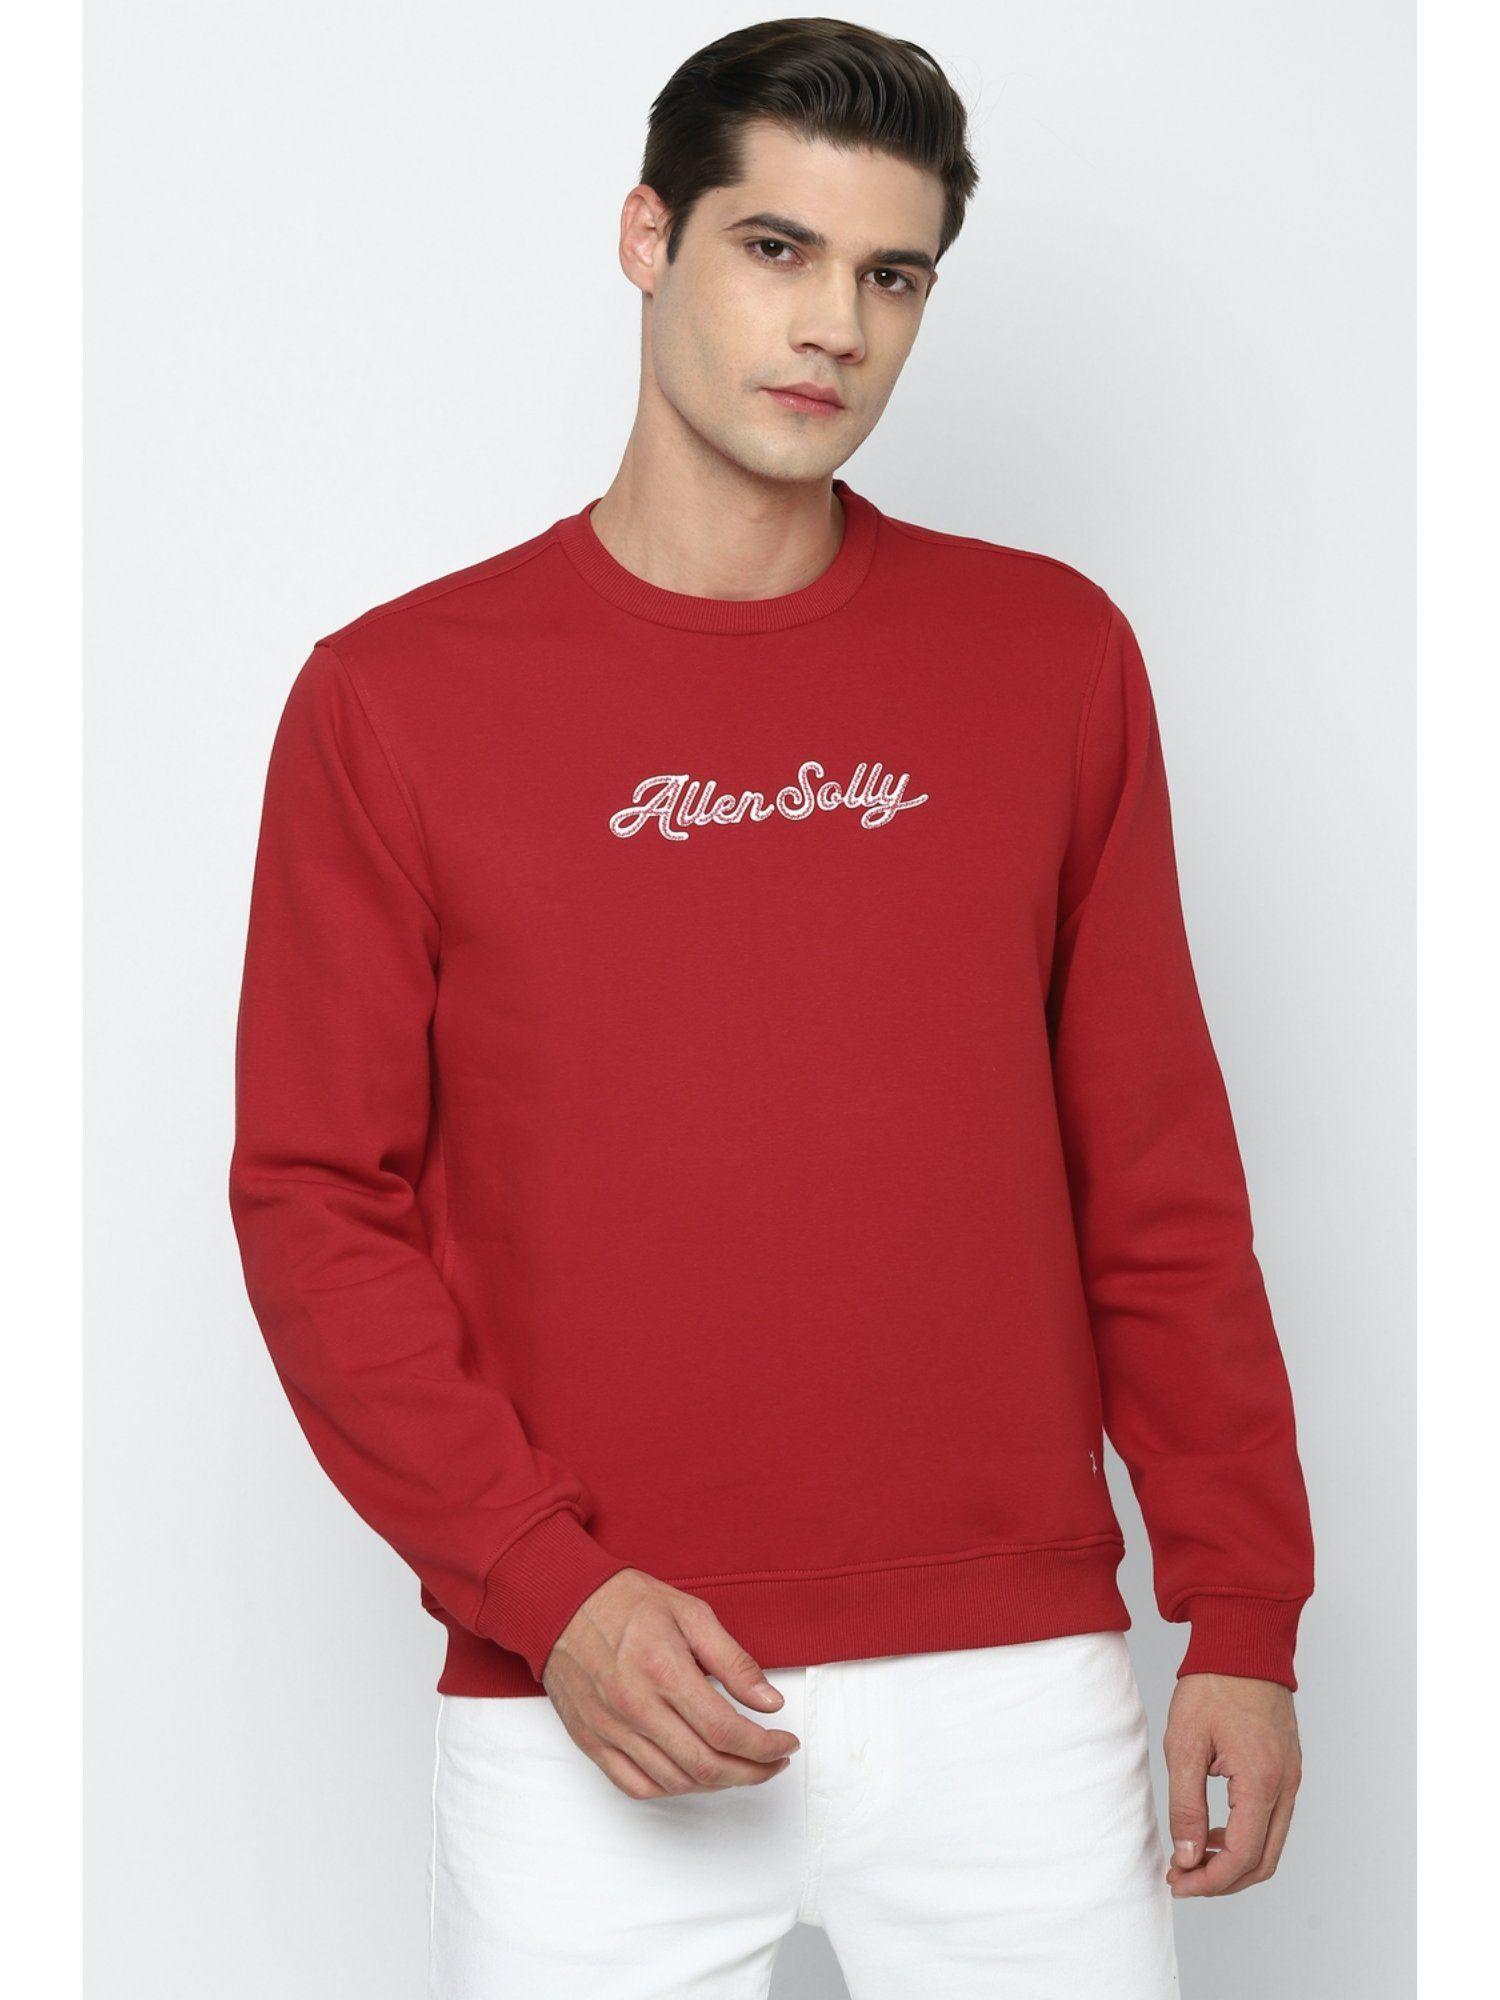 printed red sweatshirt